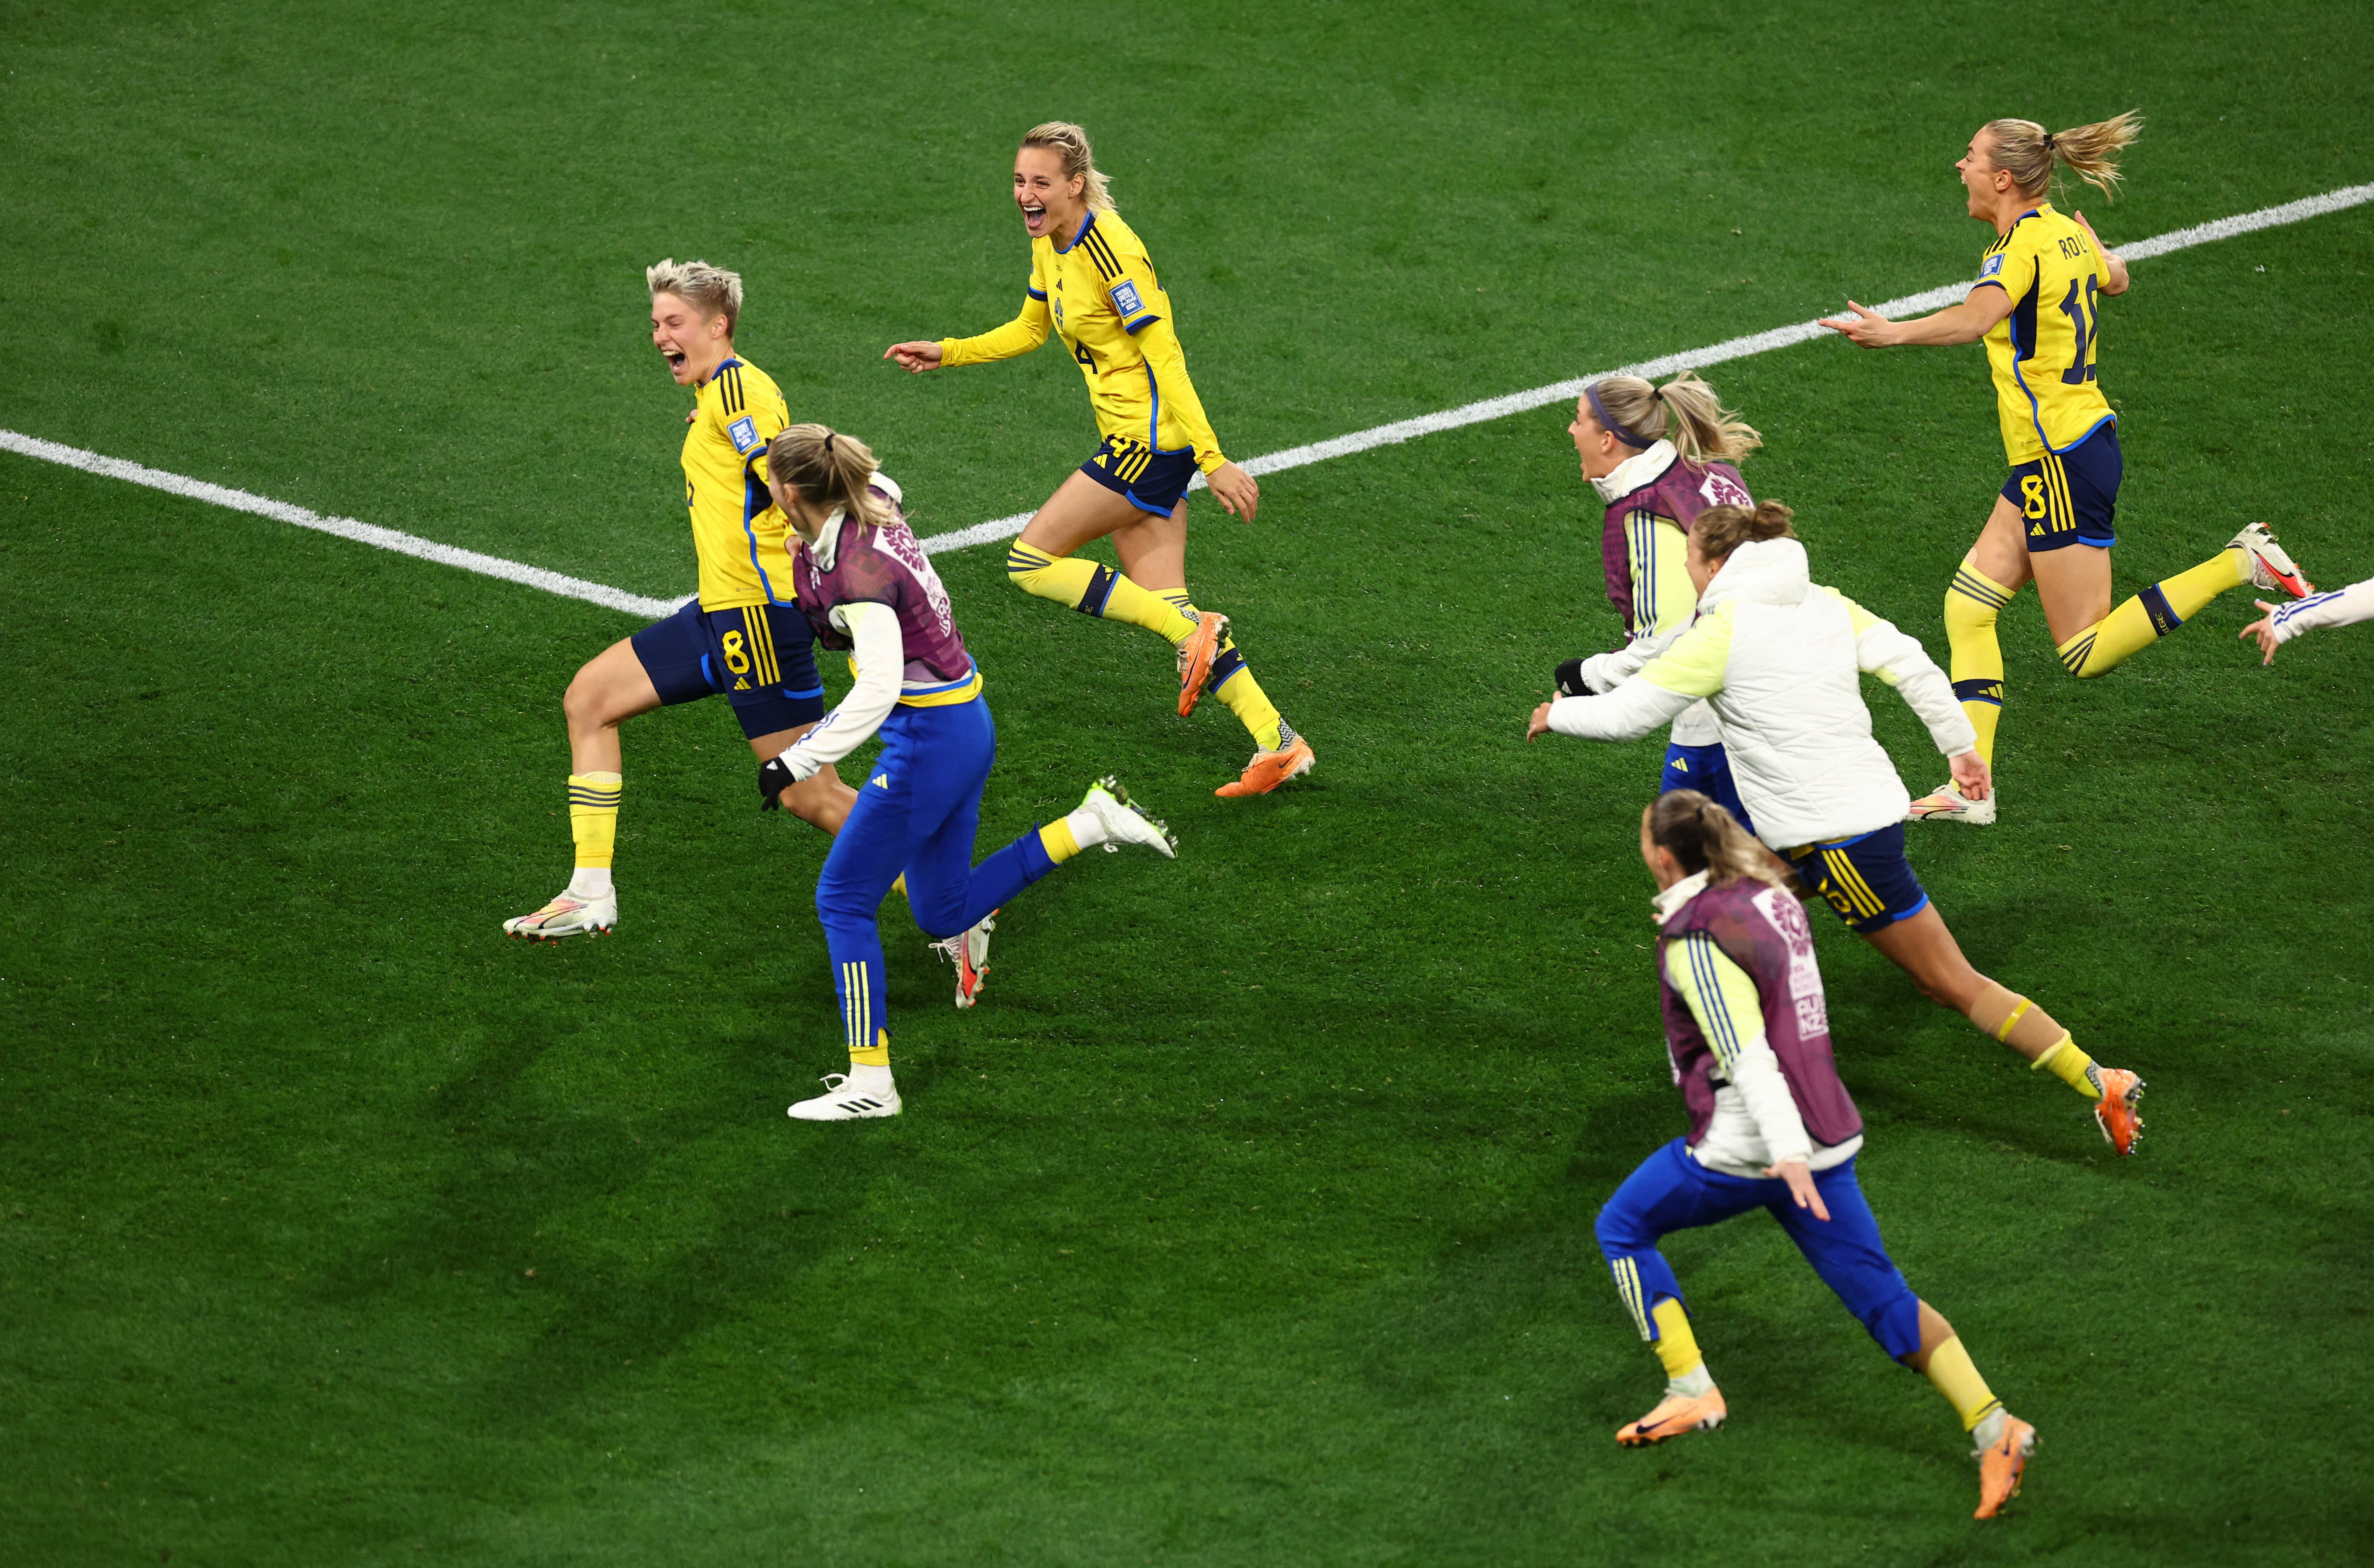 US loses to Sweden on penalty kicks in its earliest Women's World